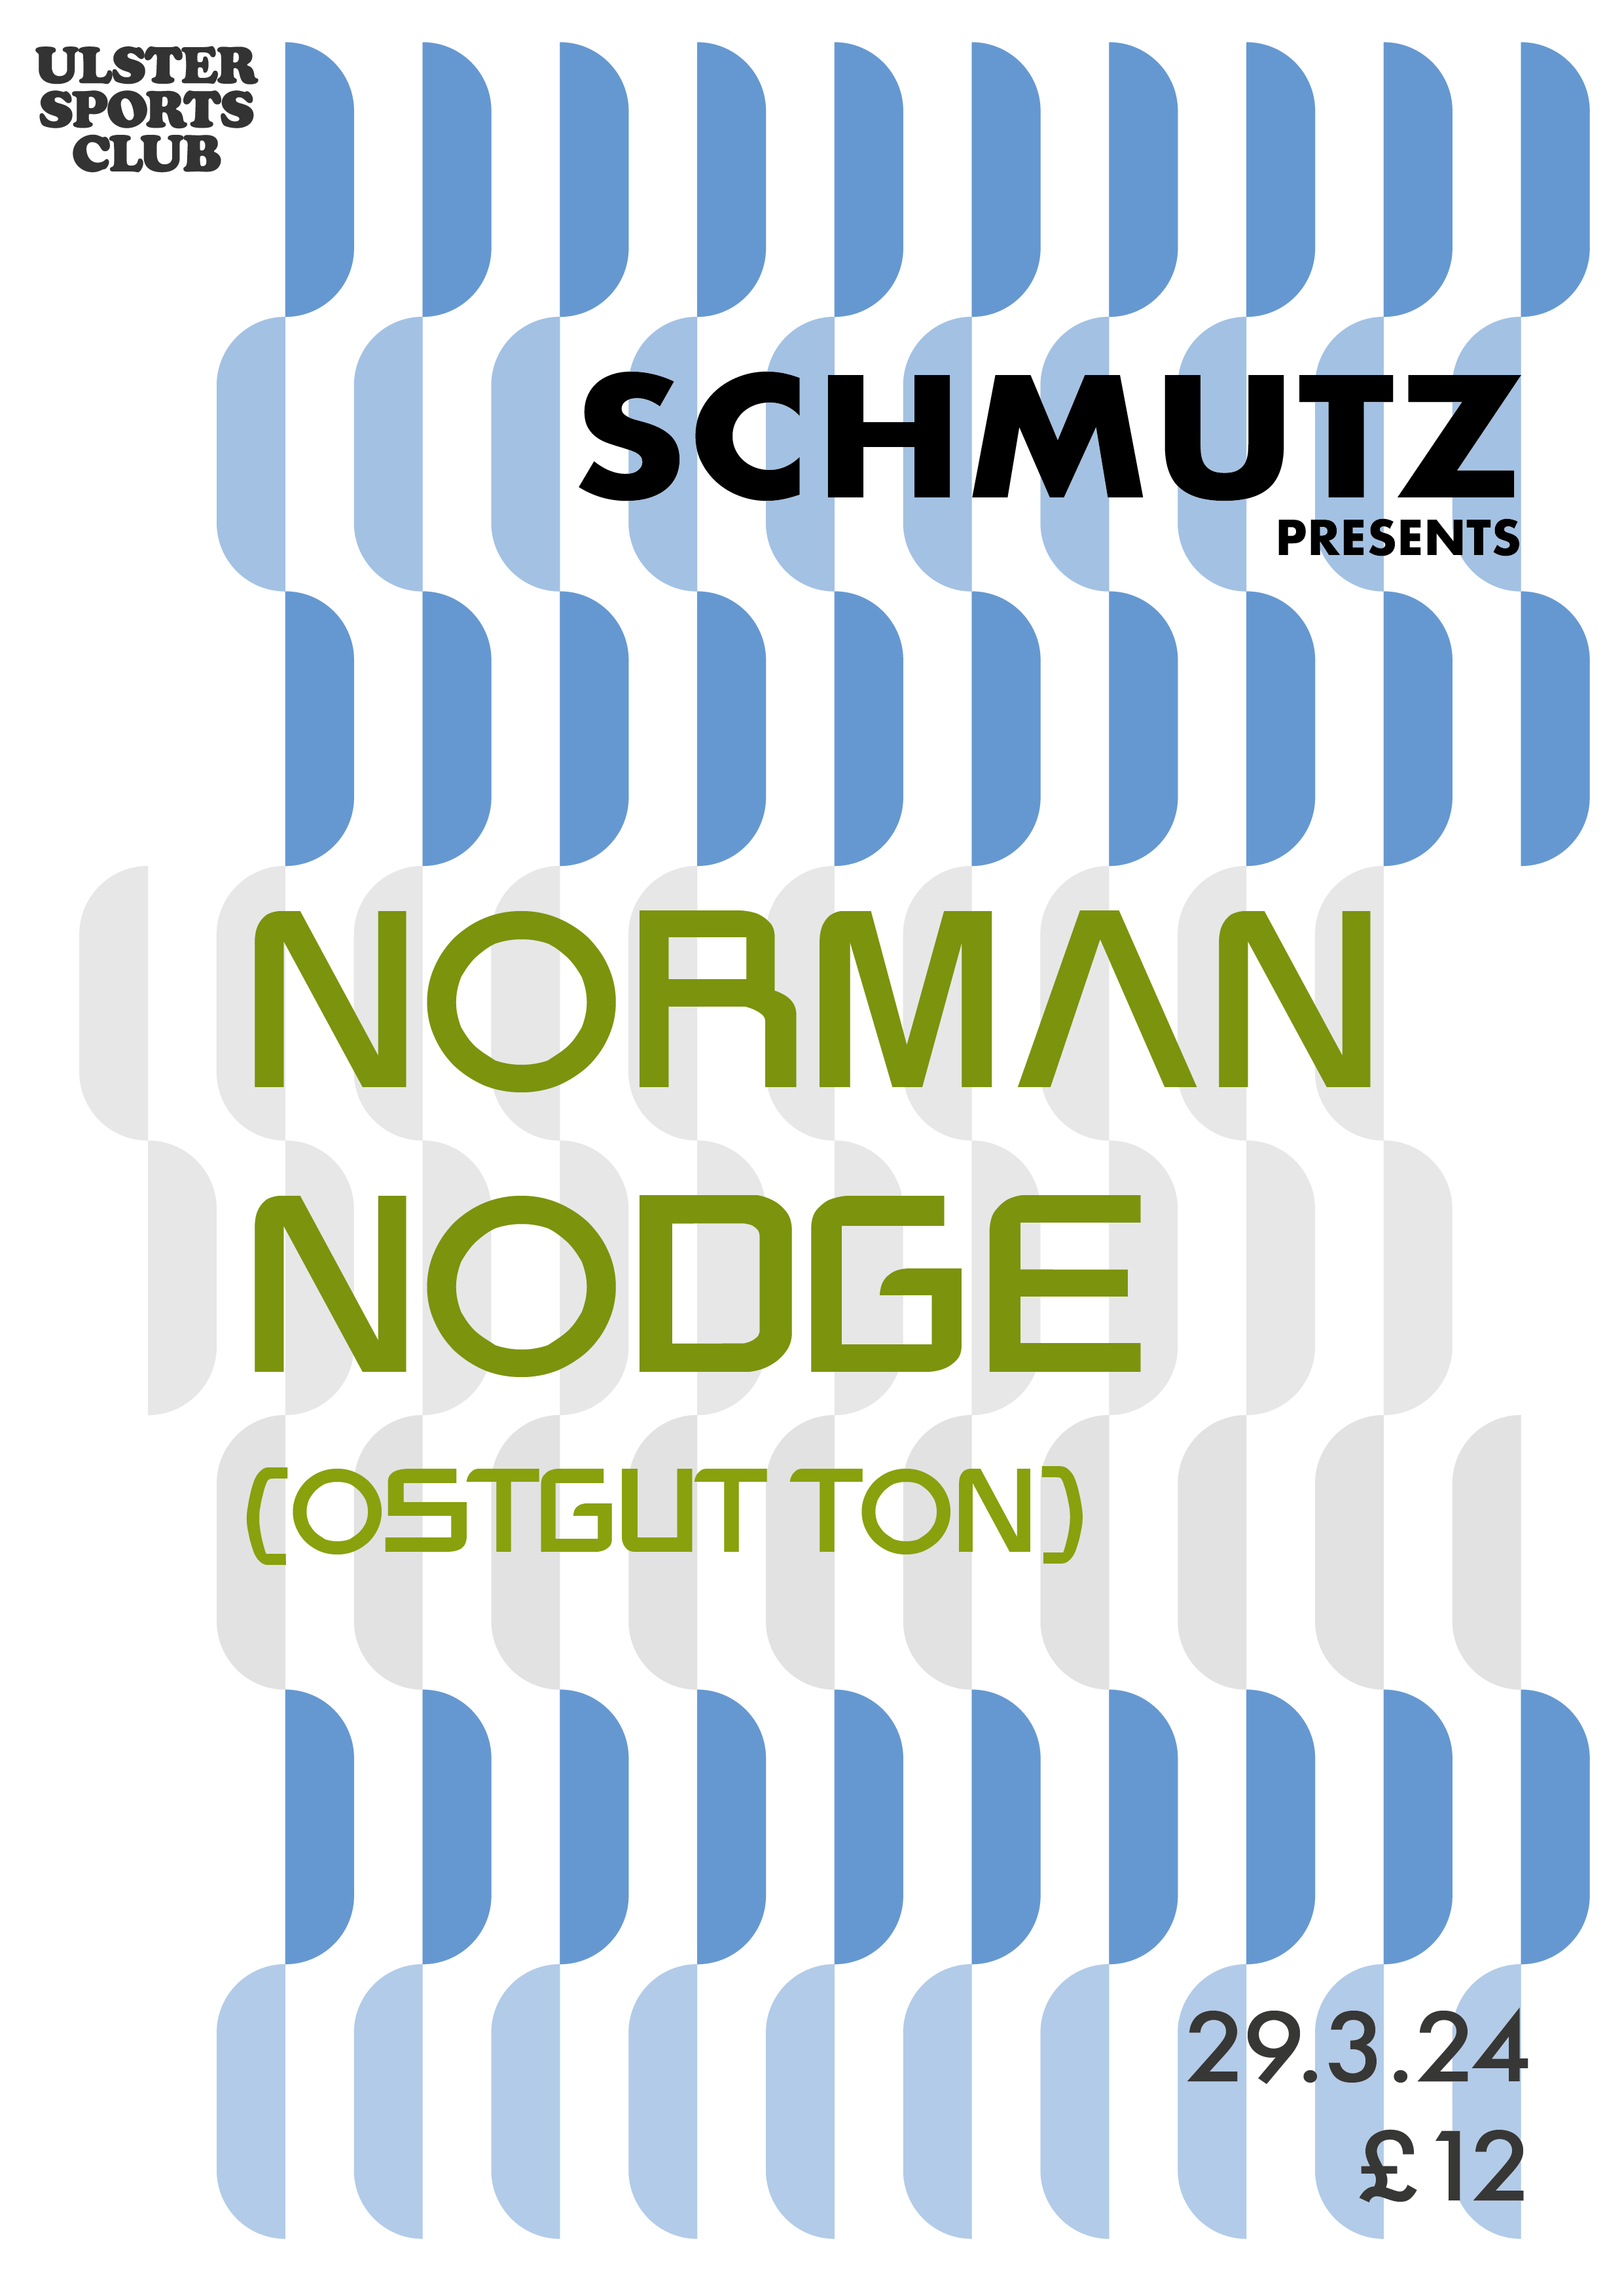 Schmutz Presents Norman Nodge (OstgutTon) - フライヤー表